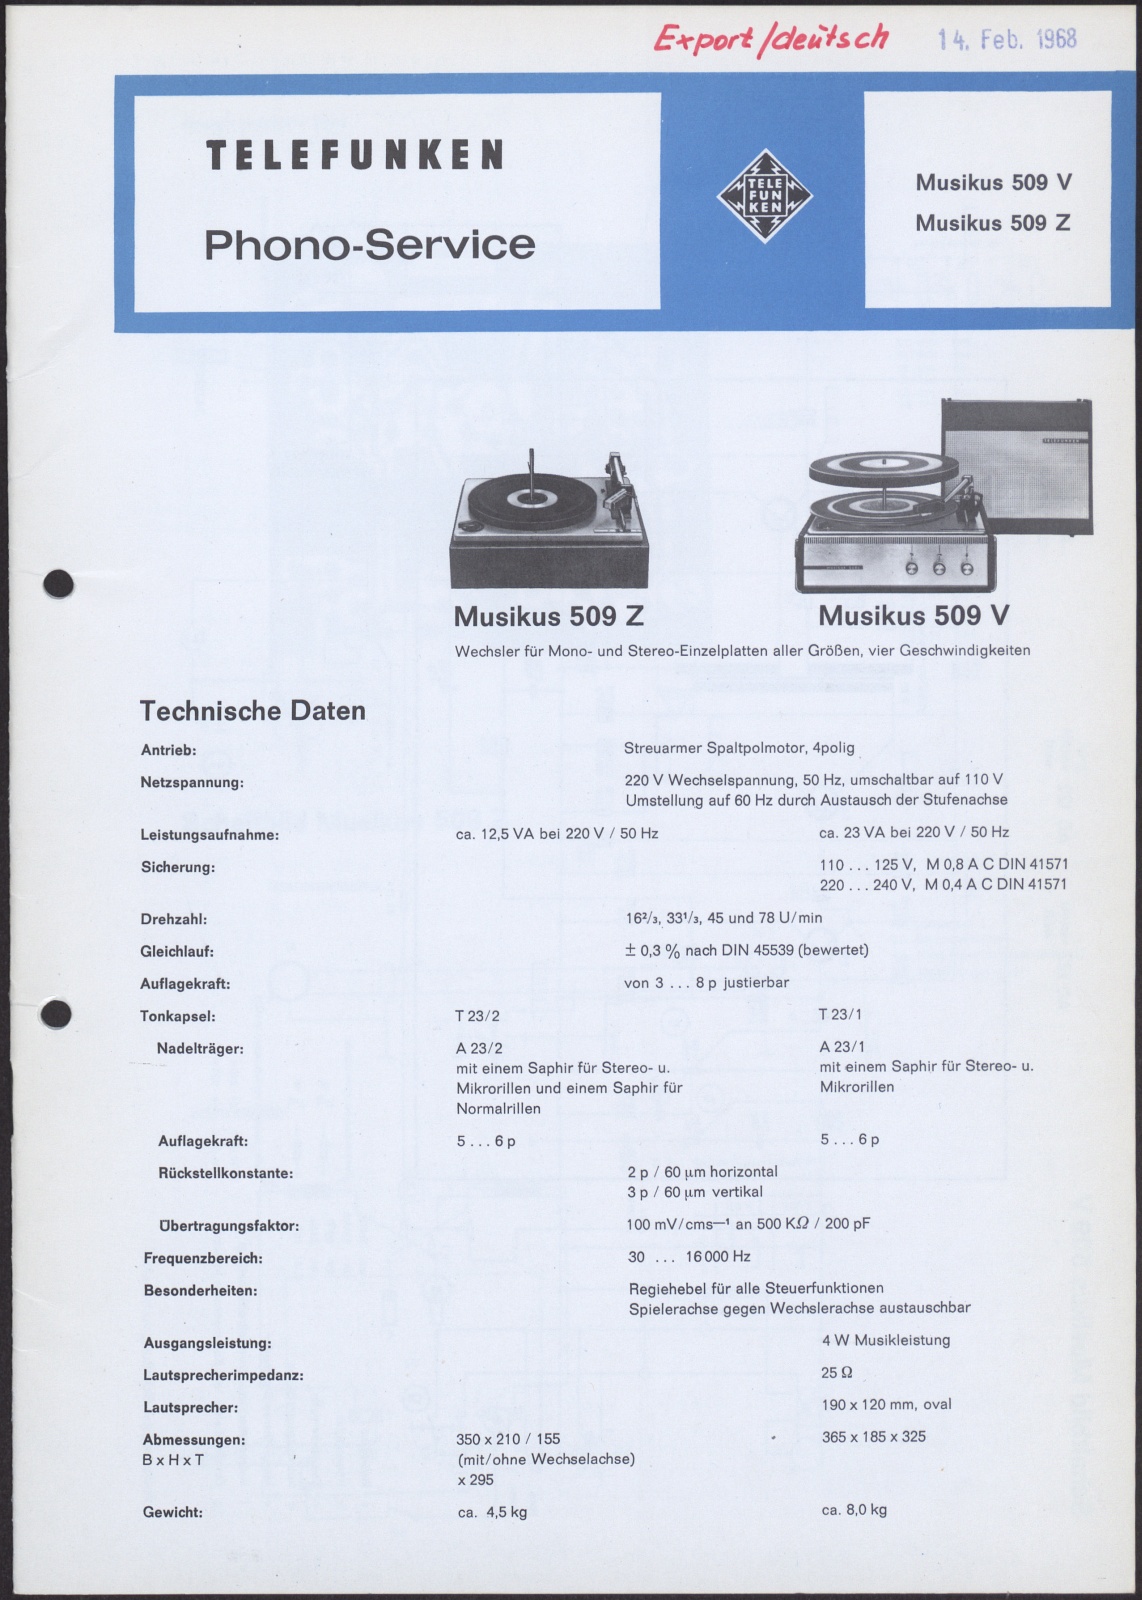 Bedienungsanleitung: Telefunken Phono-Service für Musikus 509 V und Musikus 509 Z (Stiftung Deutsches Technikmuseum Berlin CC0)